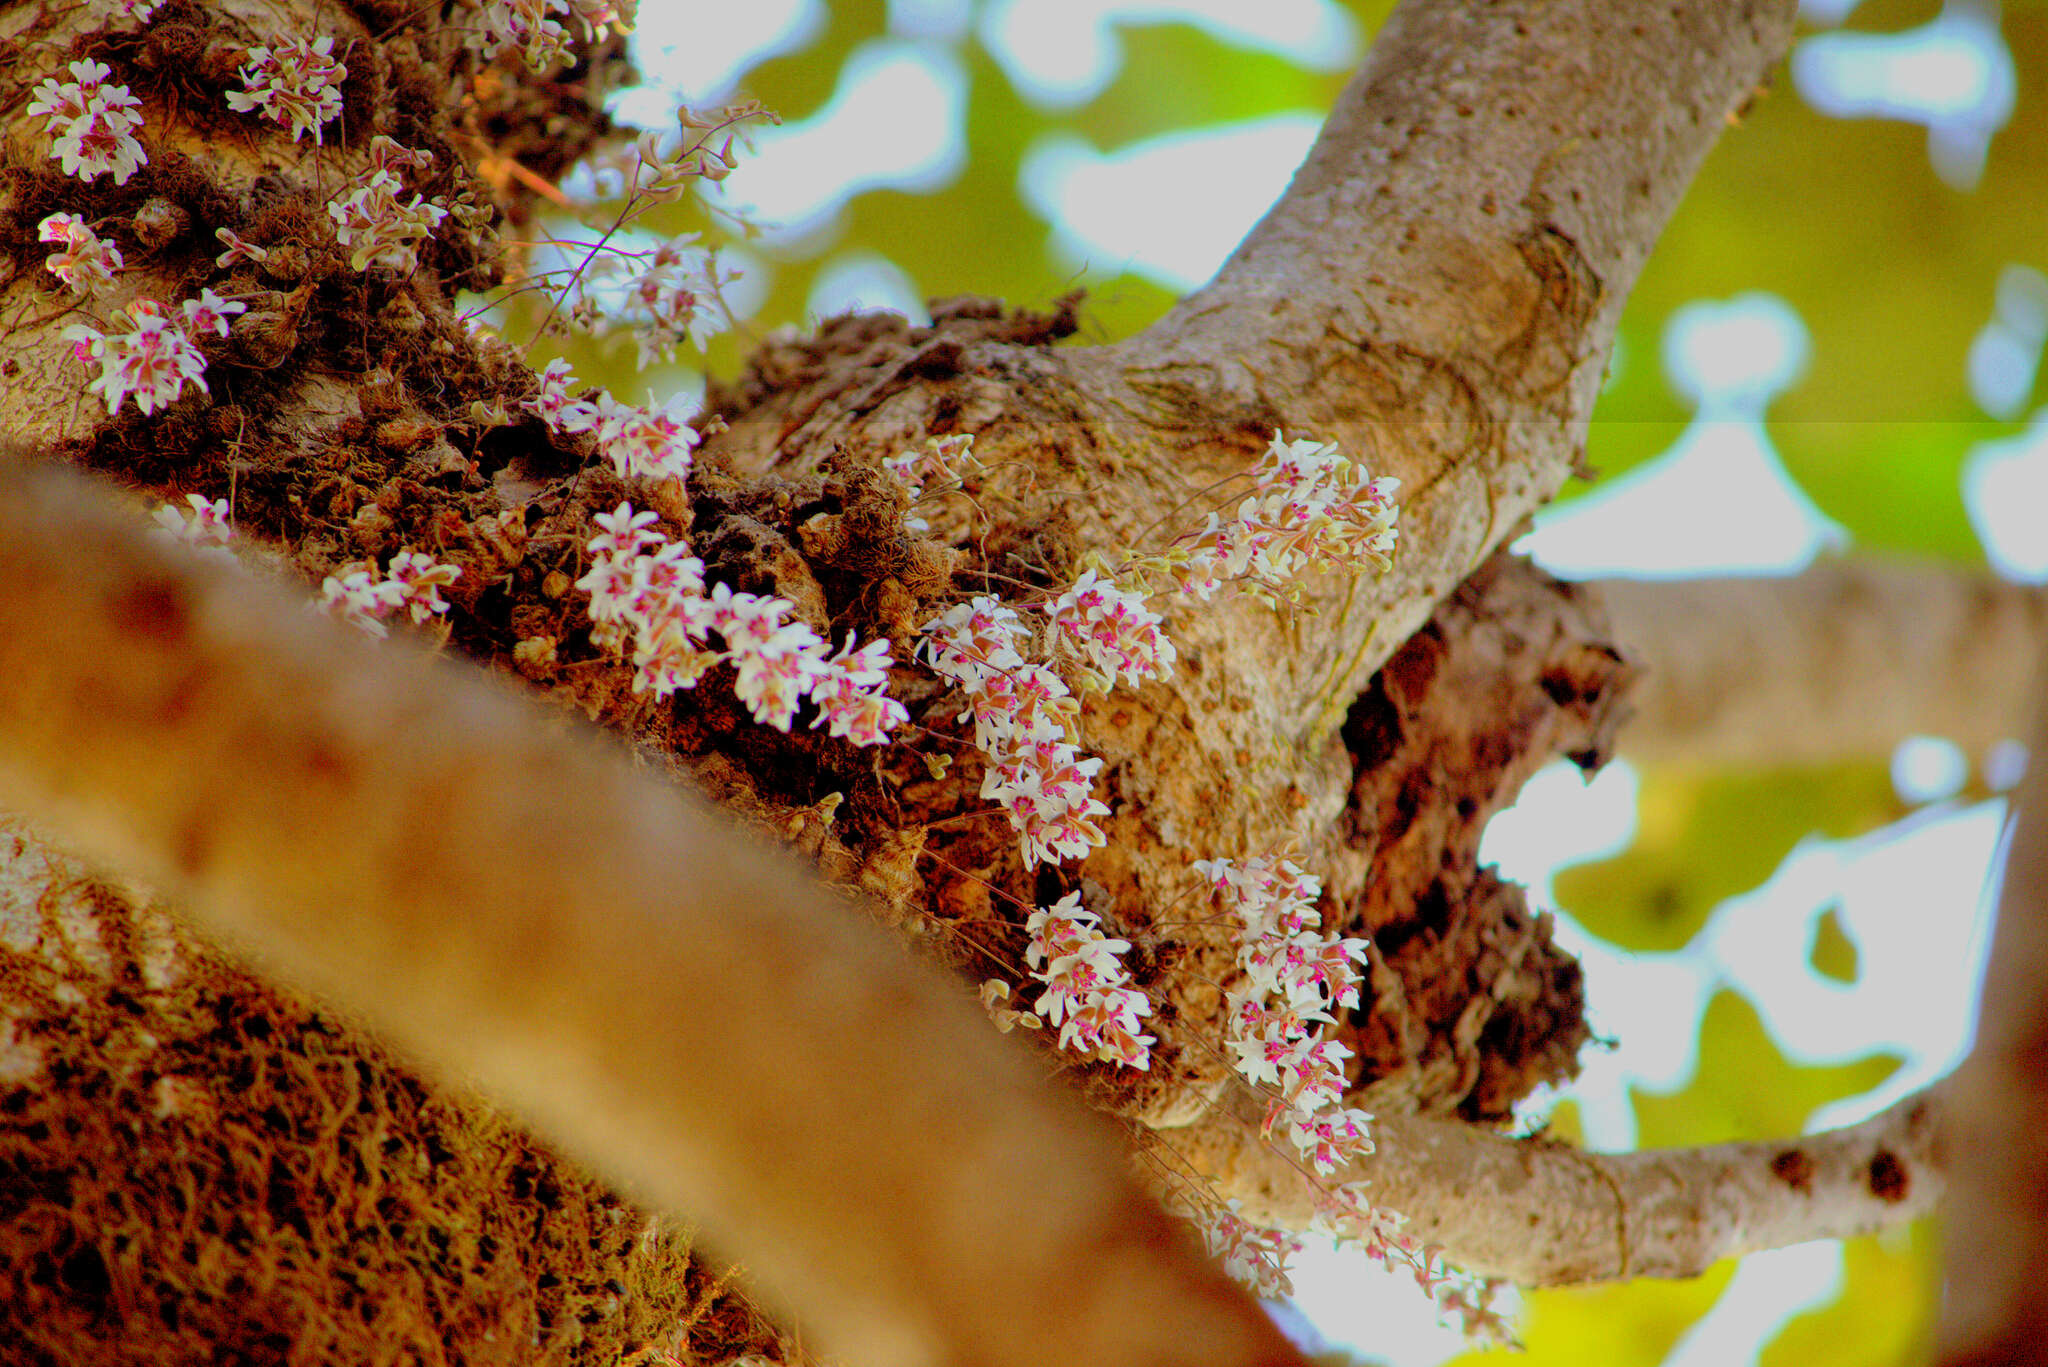 Image of Dendrobium turbinatum